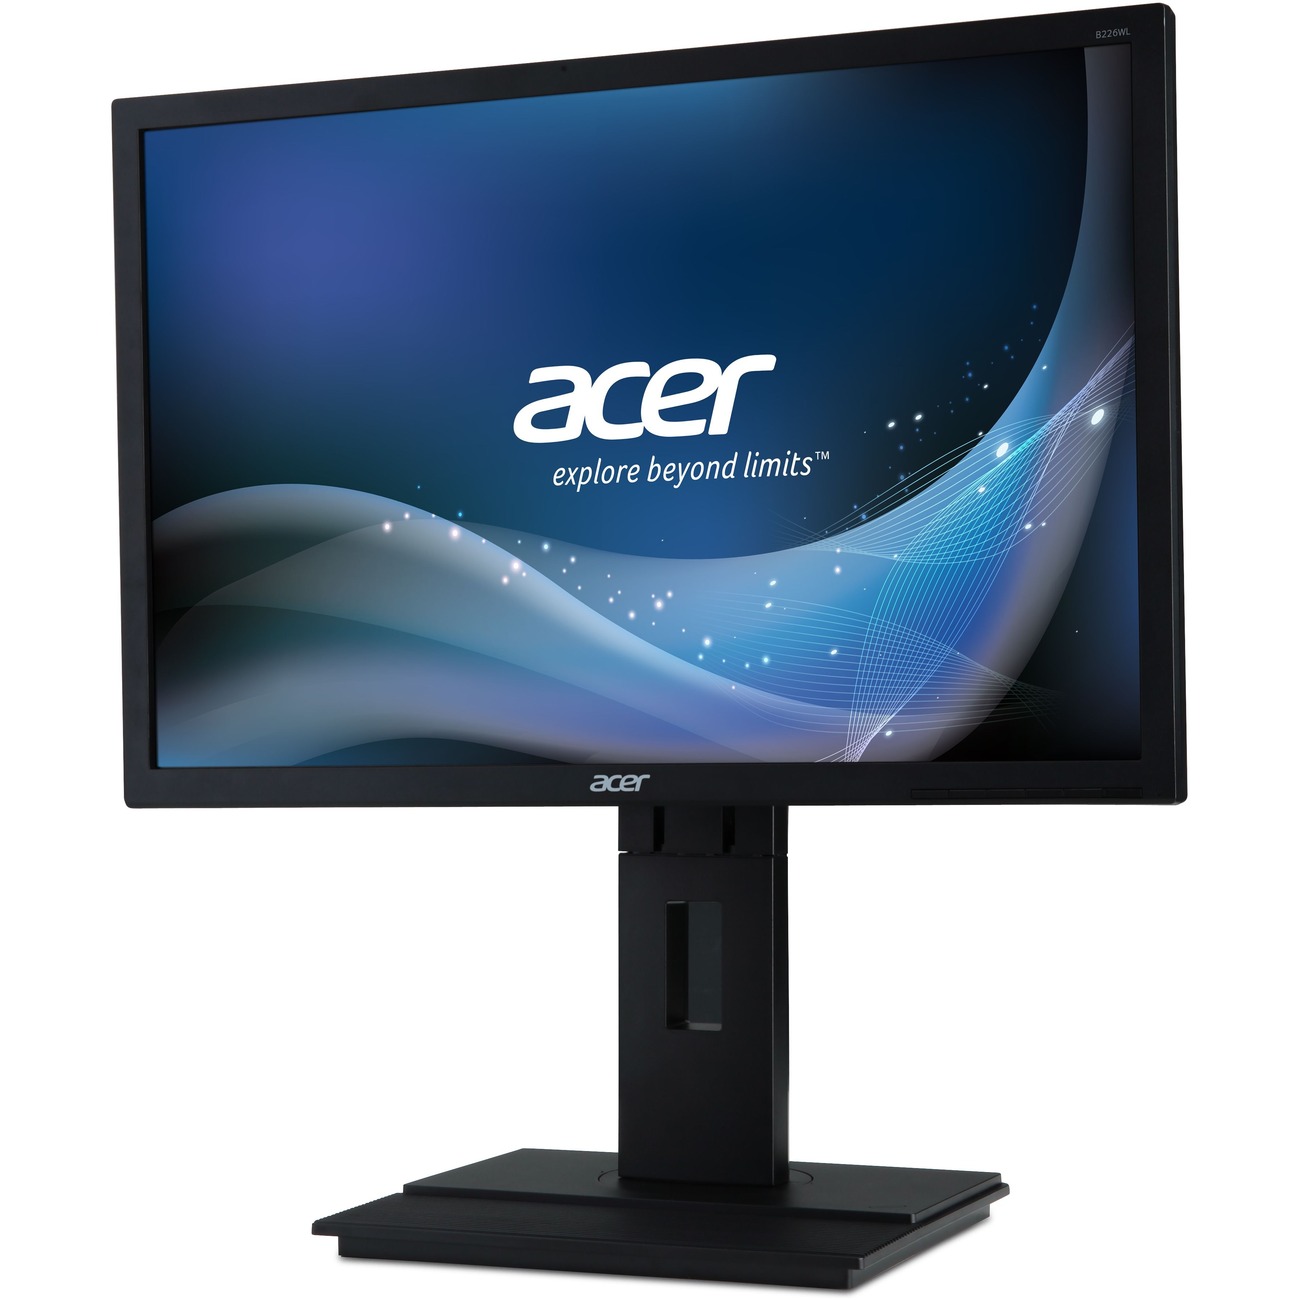 品)Acer B226WL ymdr - LED monitor - 22 - 1680 x 1050 - 250 cd/m2